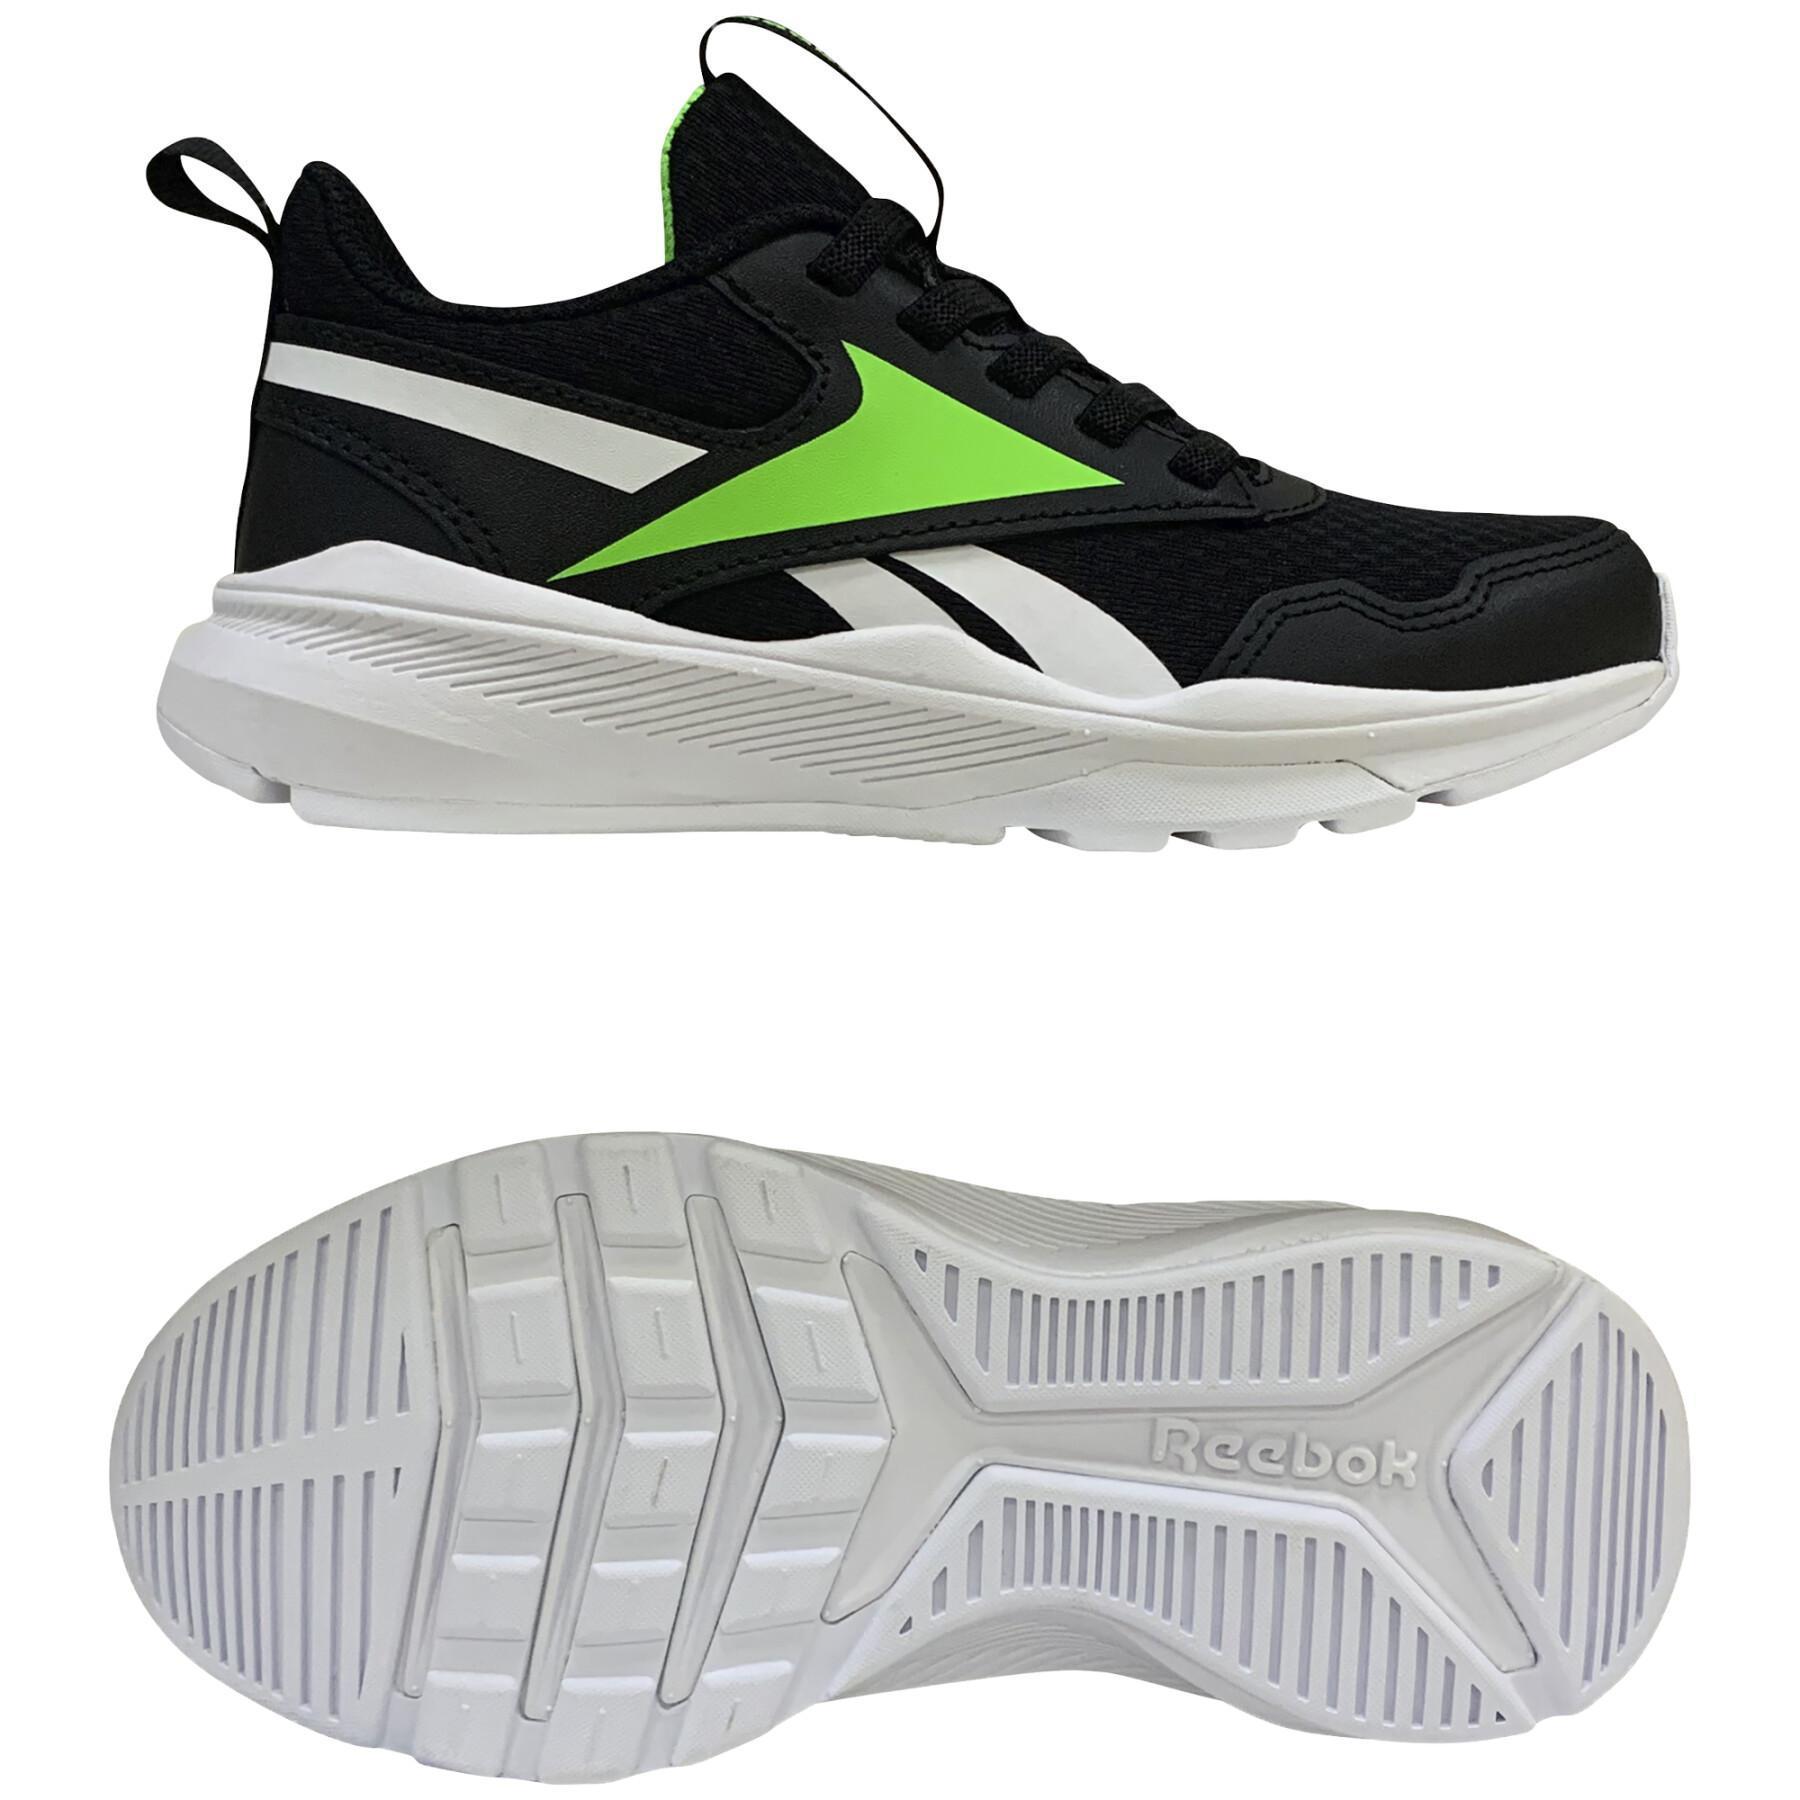 Fácil de leer semiconductor Poner a prueba o probar Zapatillas para niños Reebok XT Sprinter 2 - Reebok - Zapatos running niño  - Running